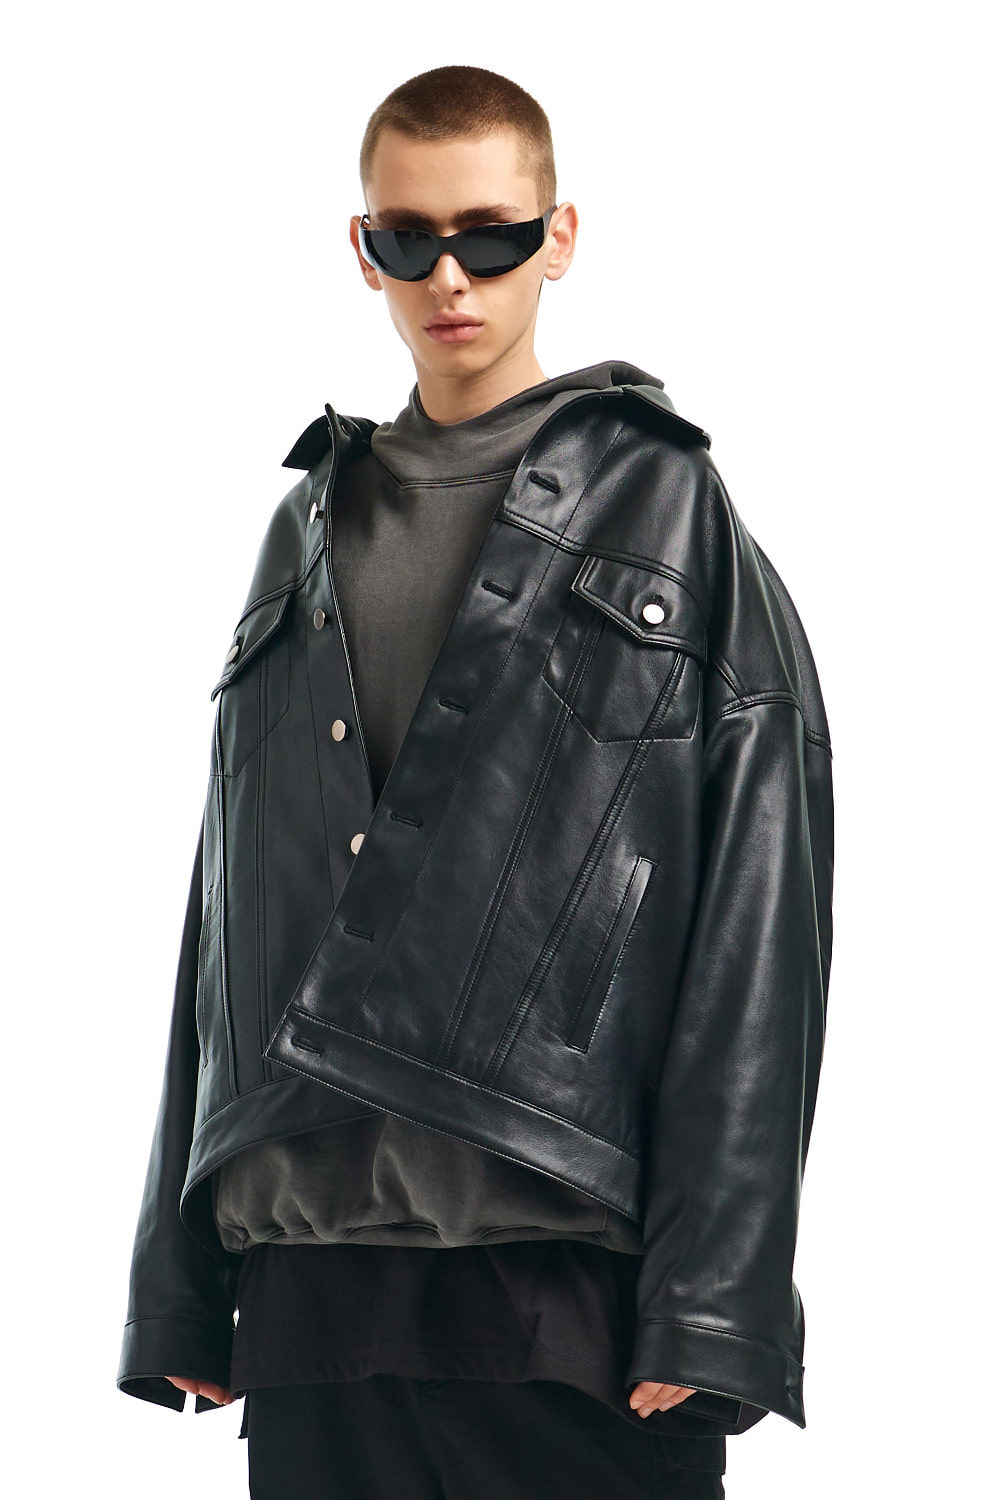 [-10%] 오버사이즈드 램스킨 트러커 재킷 IN 블랙